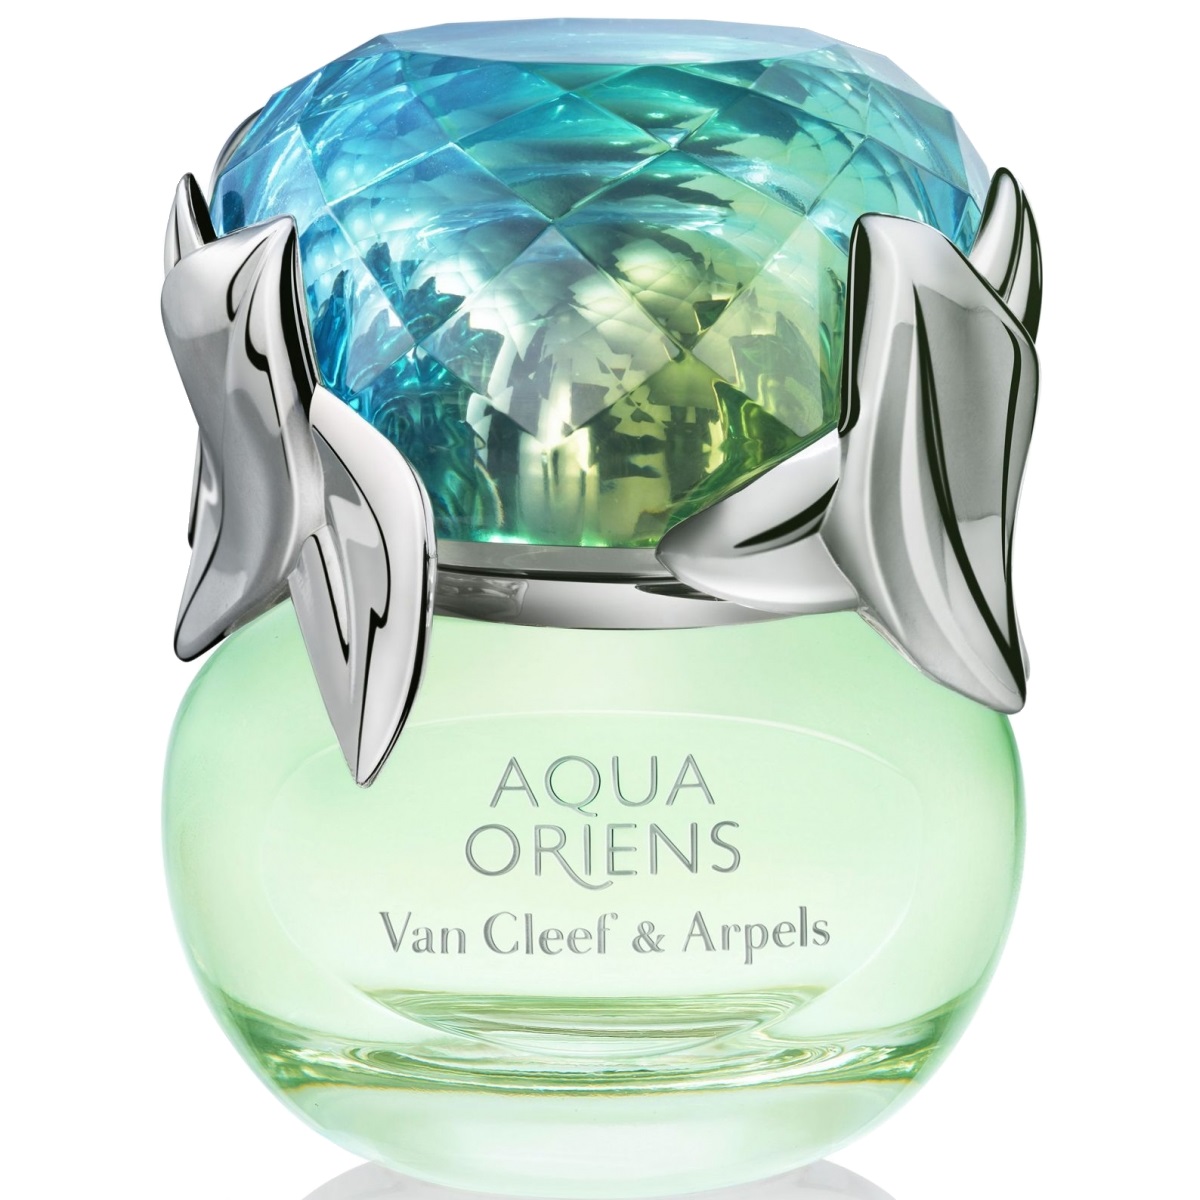 Van Cleef & Arpels - Aqua Oriens (50мл)